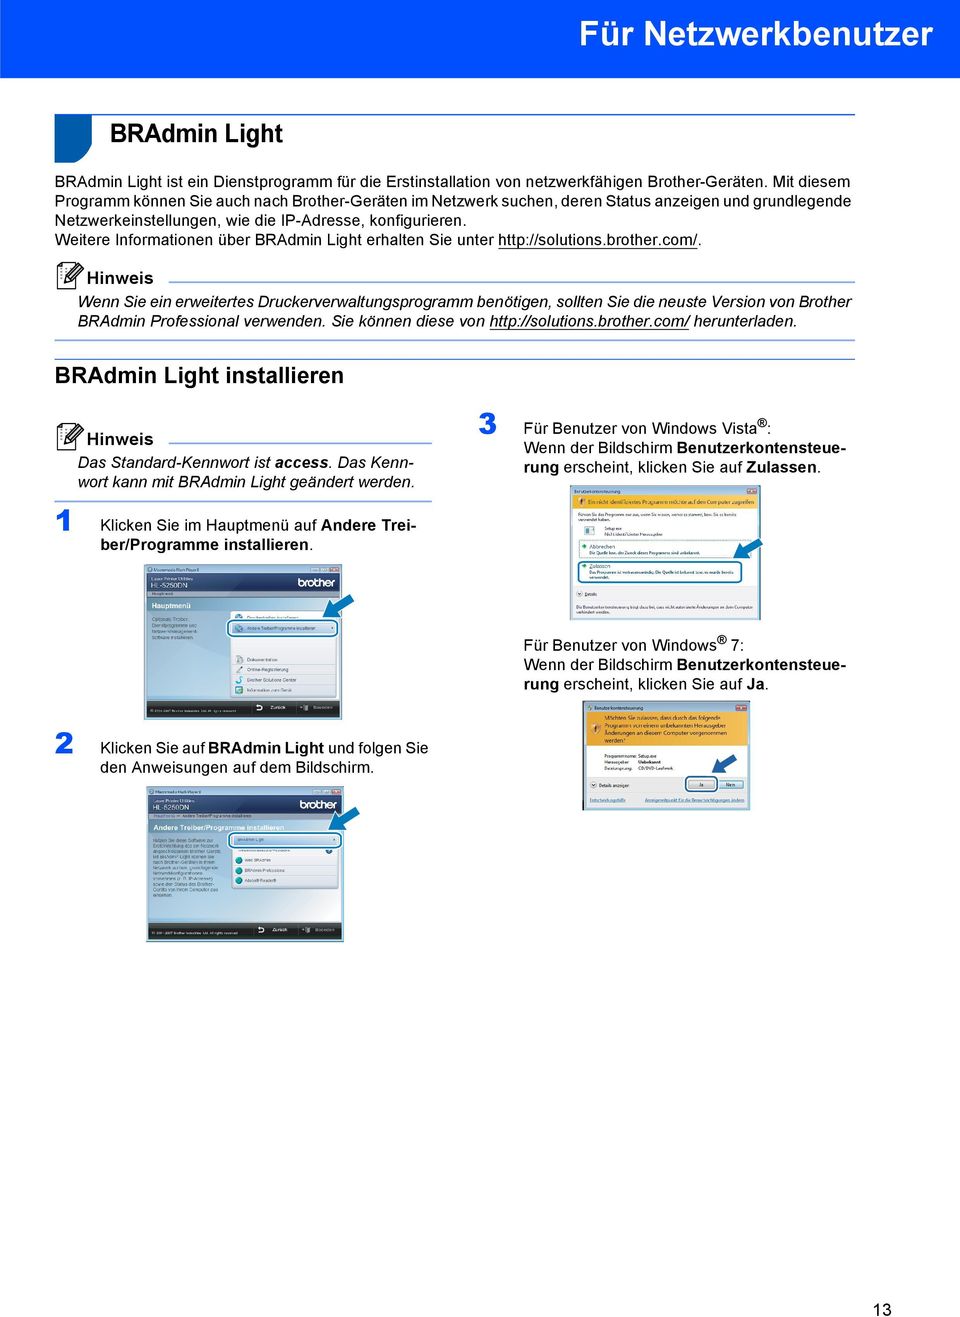 Weitere Informationen über BRAdmin Light erhalten Sie unter http://solutions.brother.com/.